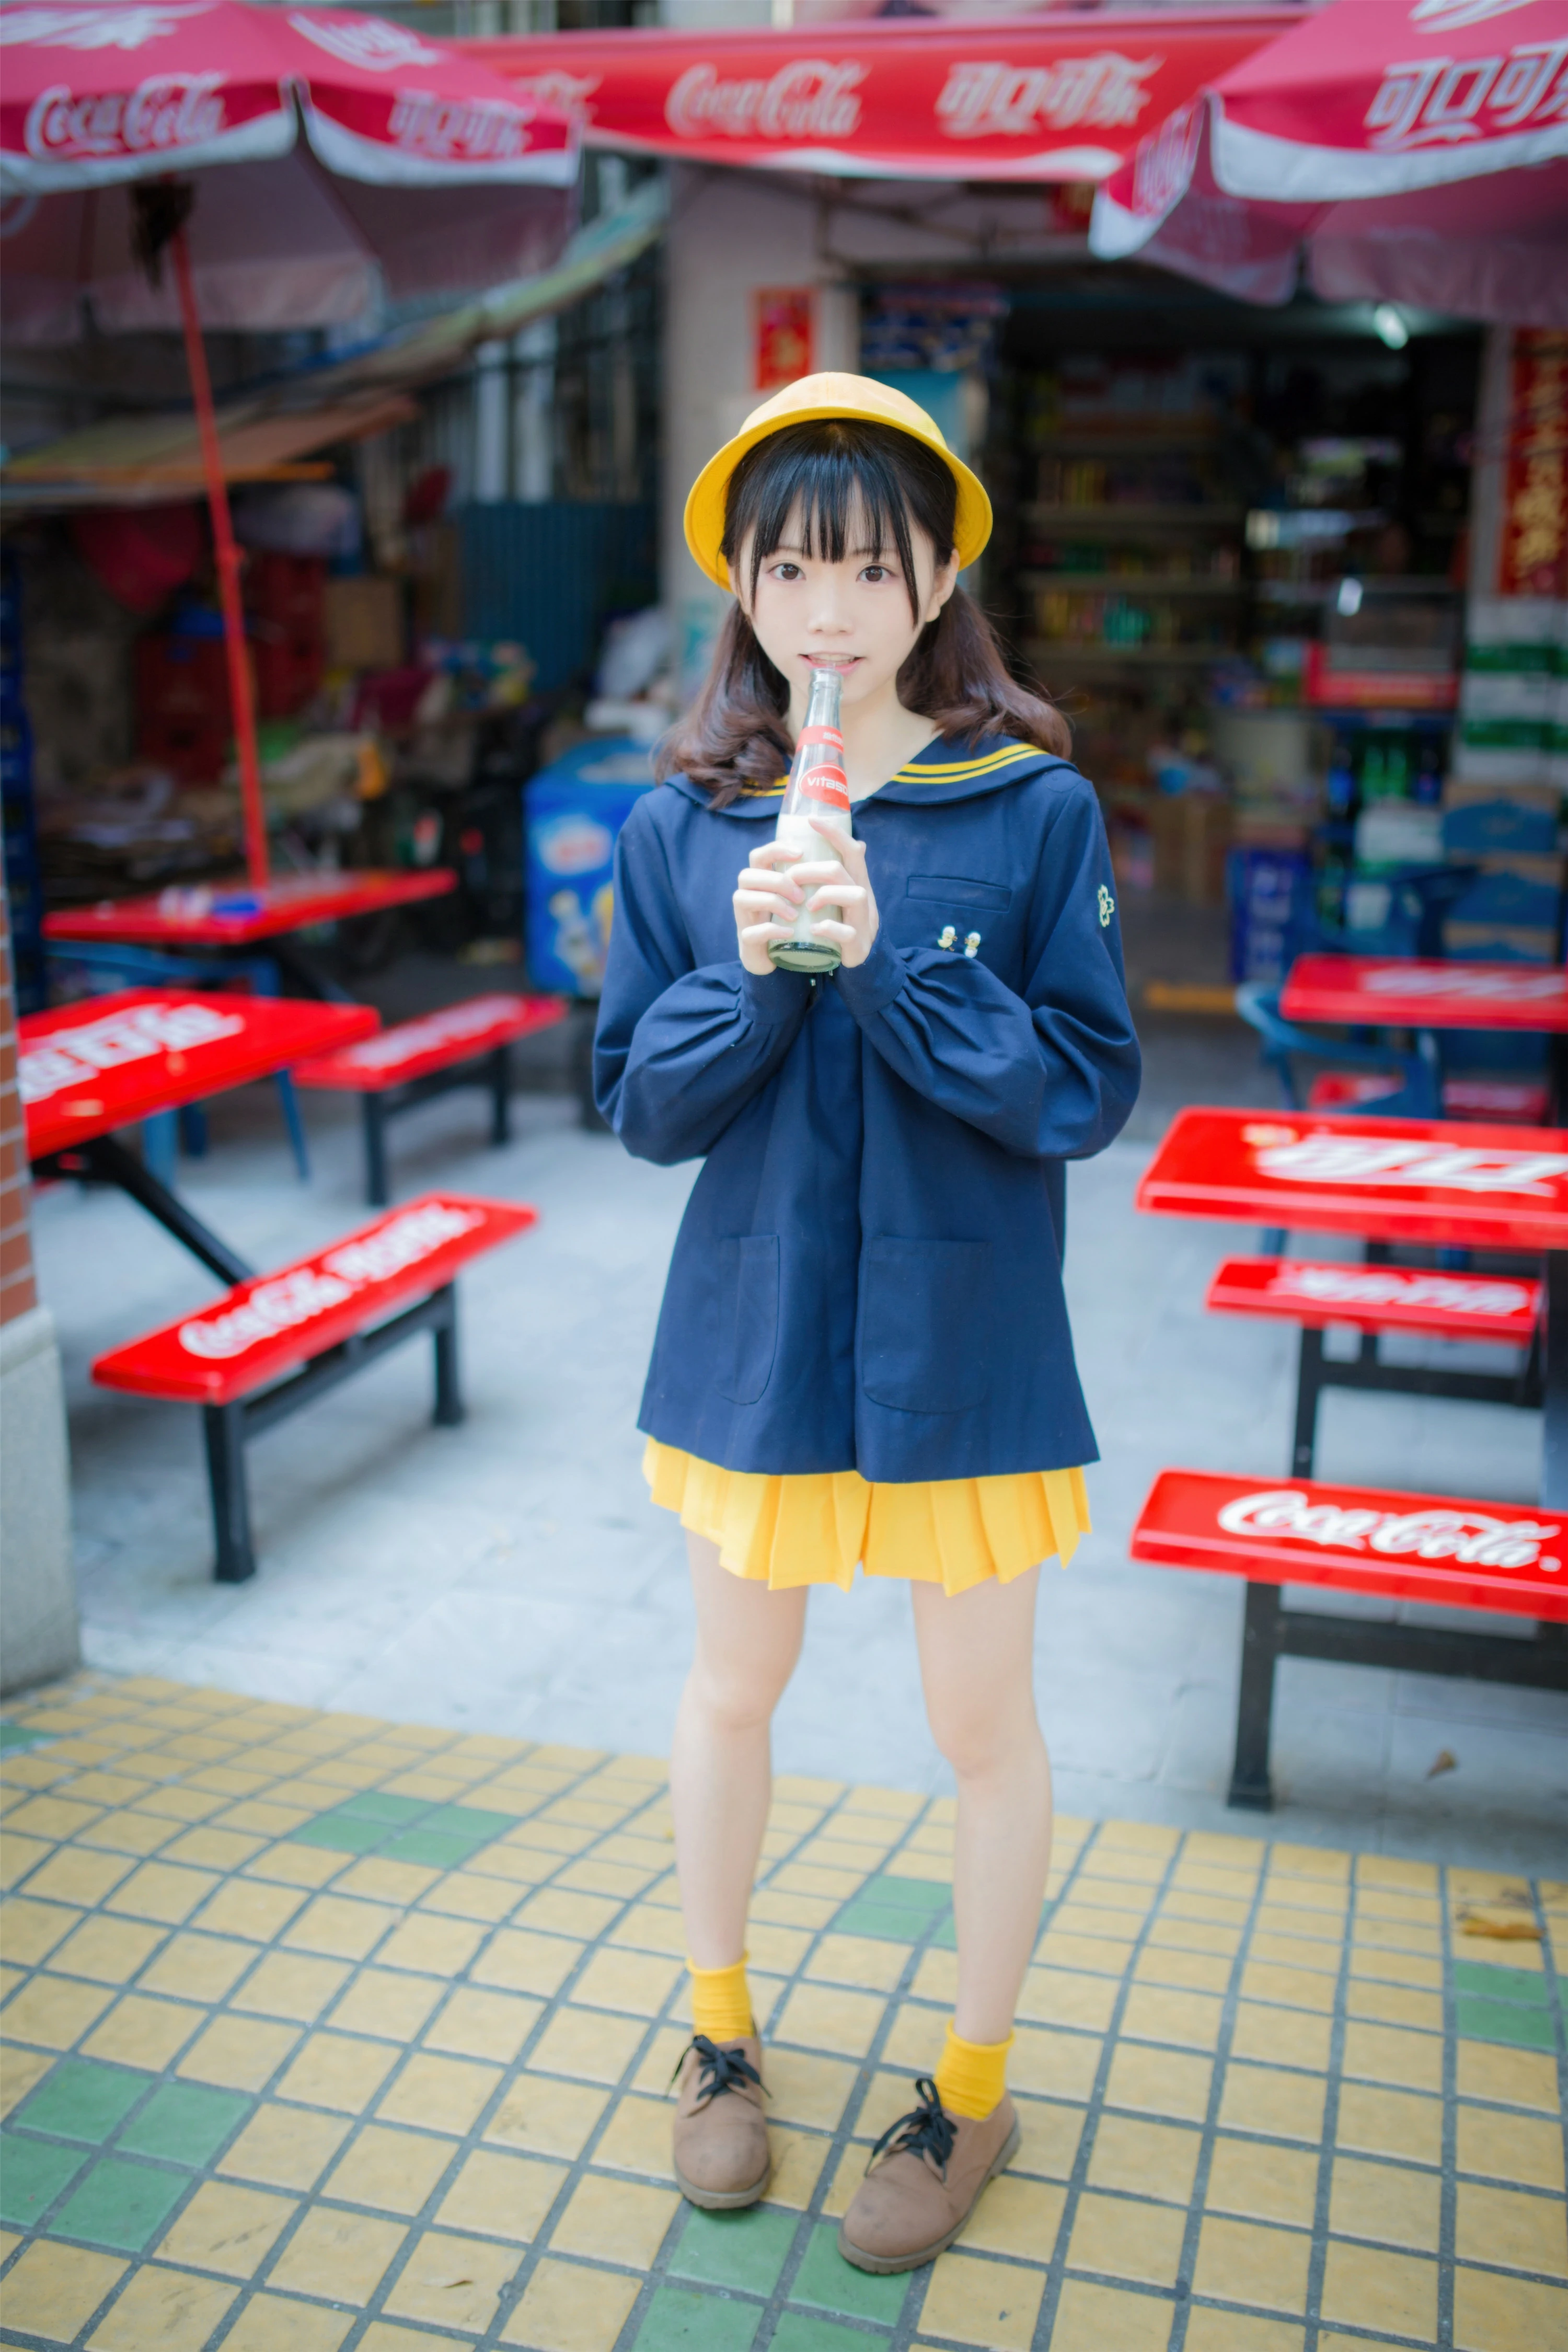 网红清纯少女 绮太郎Kitaro 蓝色JK制服加橙色短裙街拍写真集,